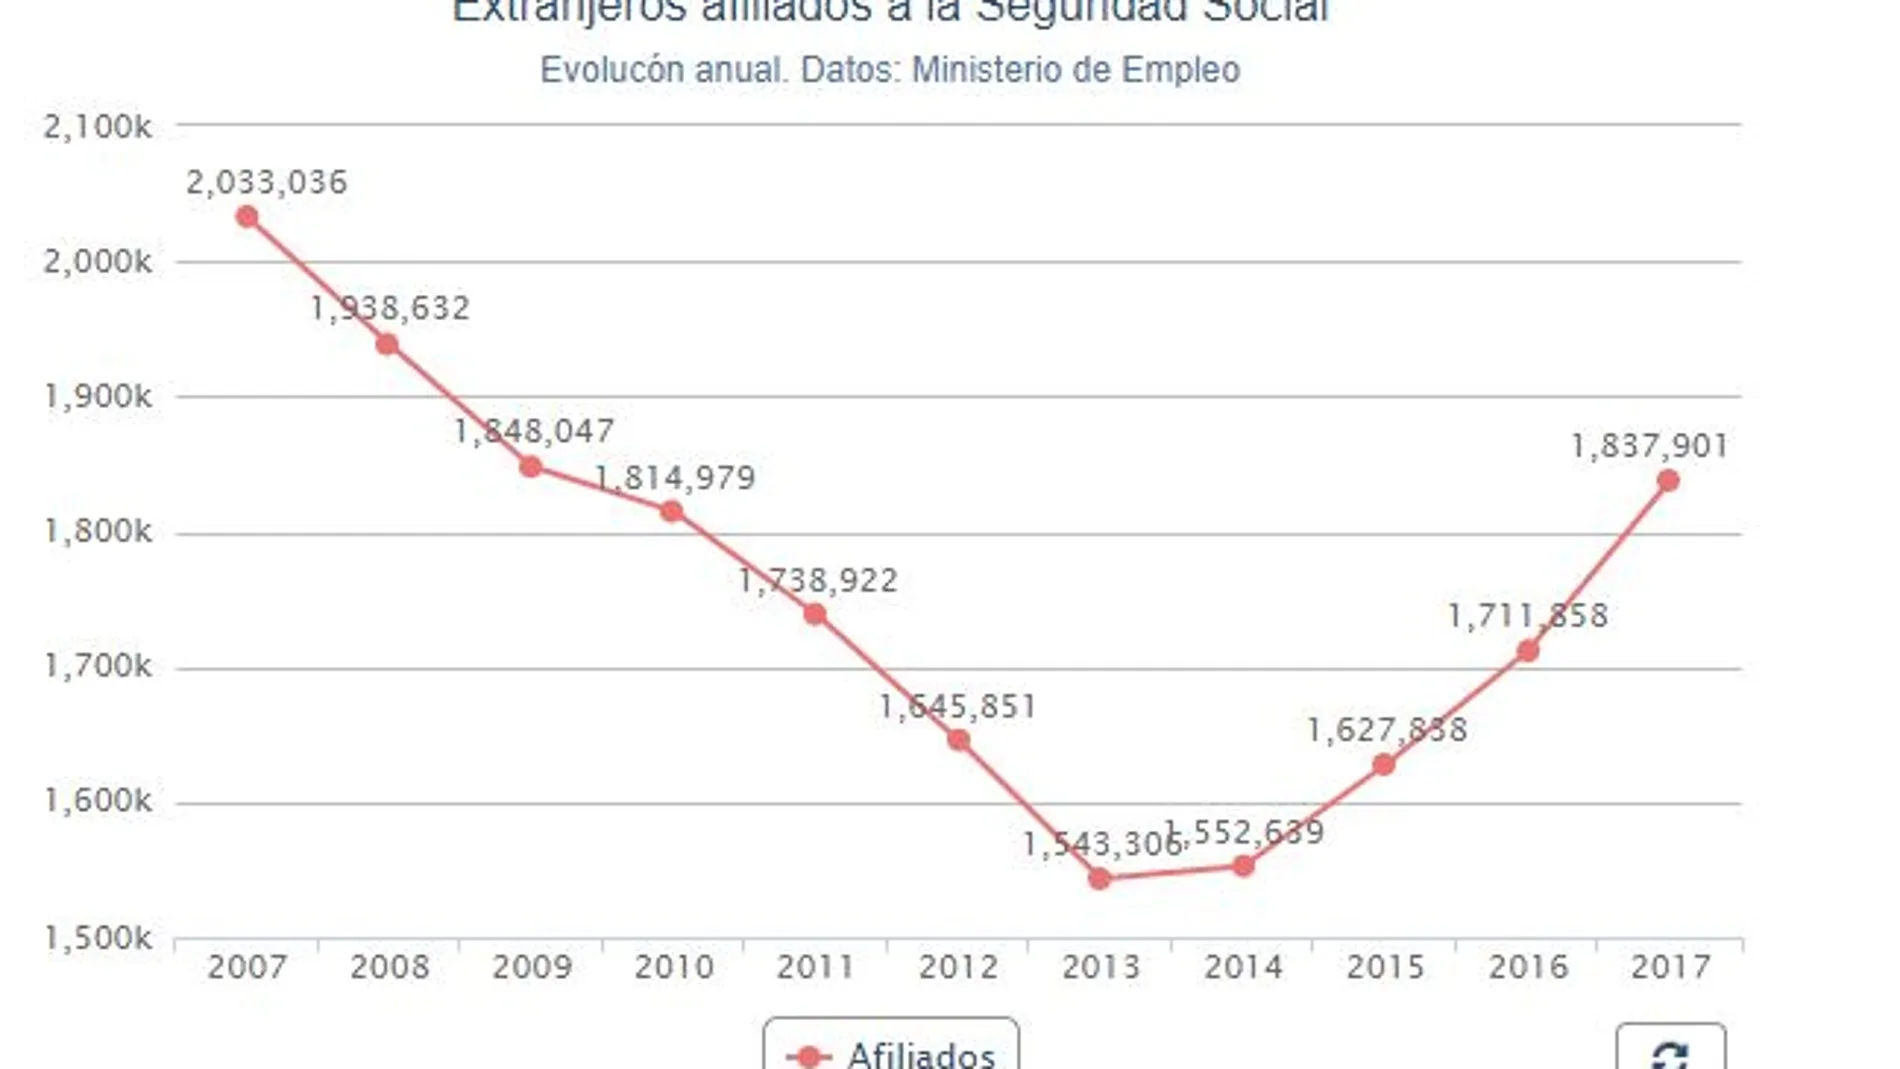 La Seguridad Social ganó 126.043 afiliados extranjeros en 2017 y suma cuatro años de ascensos